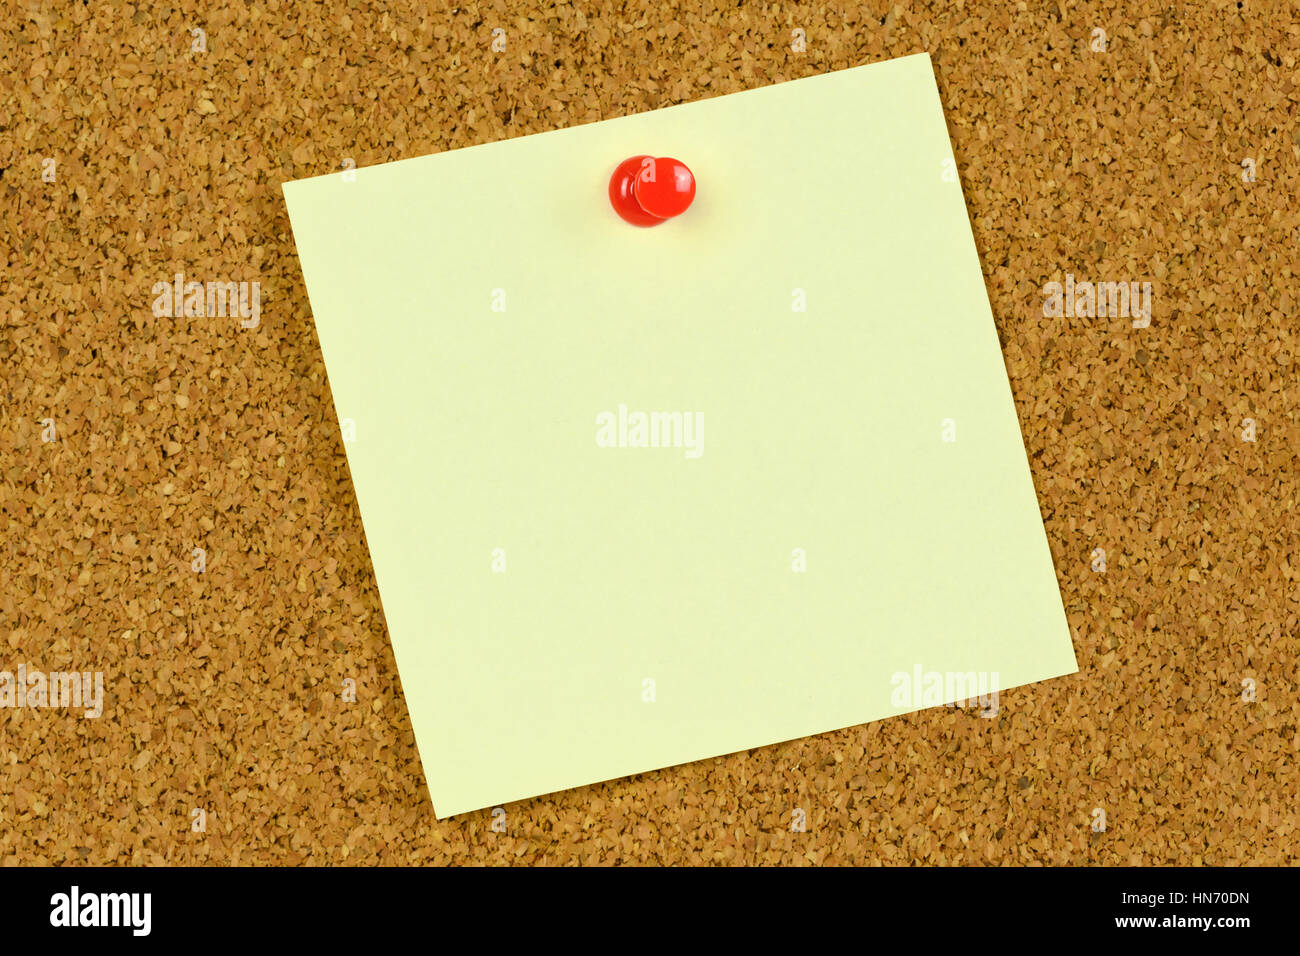 Blank bigliettino giallo tenuto su un tappo di sughero bacheca con una puntina rossa. Foto Stock